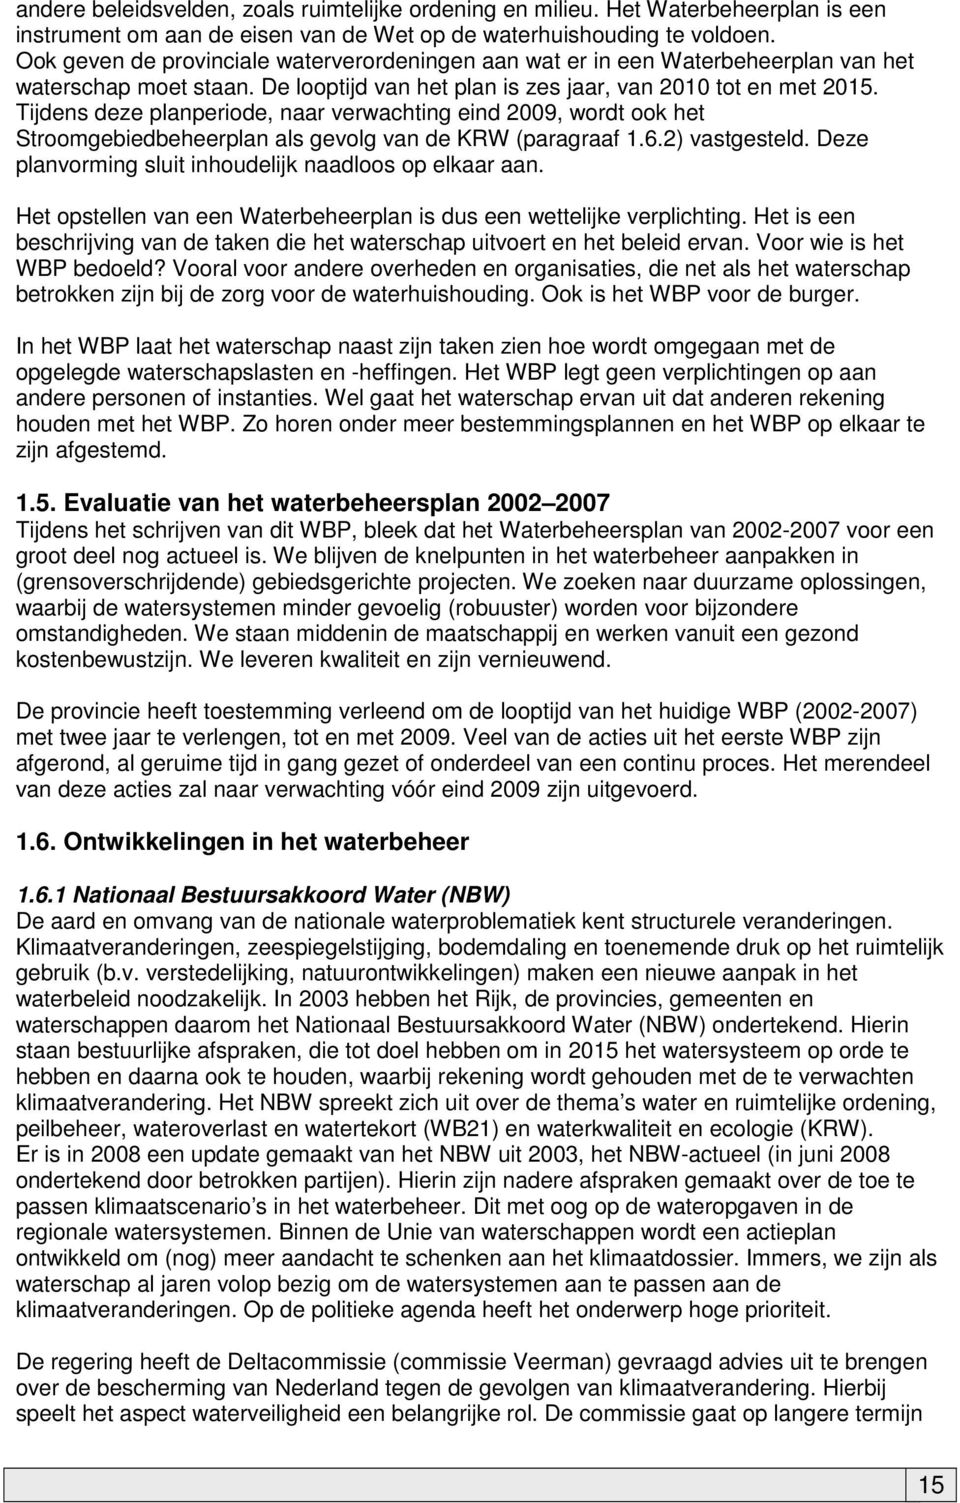 Tijdens deze planperiode, naar verwachting eind 2009, wordt ook het Stroomgebiedbeheerplan als gevolg van de KRW (paragraaf 1.6.2) vastgesteld.